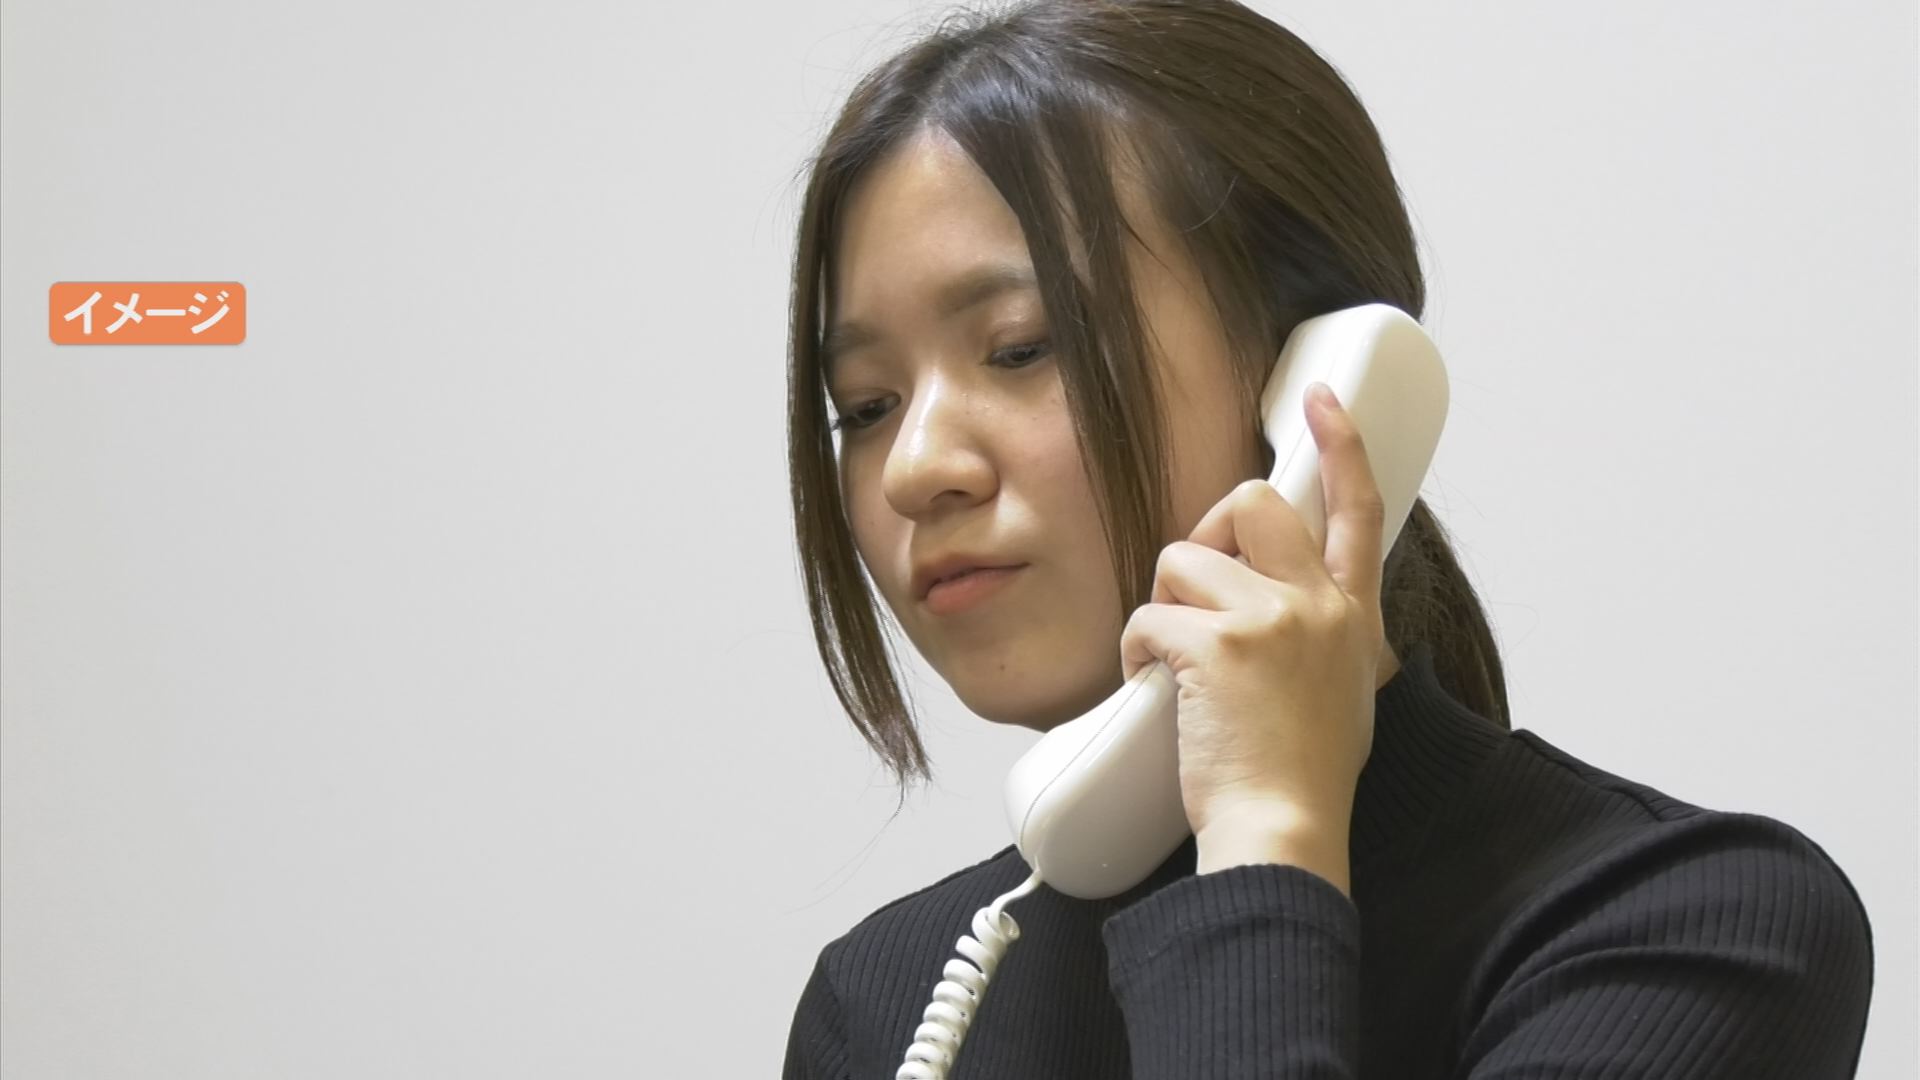 電話が嫌で仕事をやめるケースも…若い世代に多い「電話恐怖症」　電話マナー学ぶ「もしもし検定」採用する企業が増加